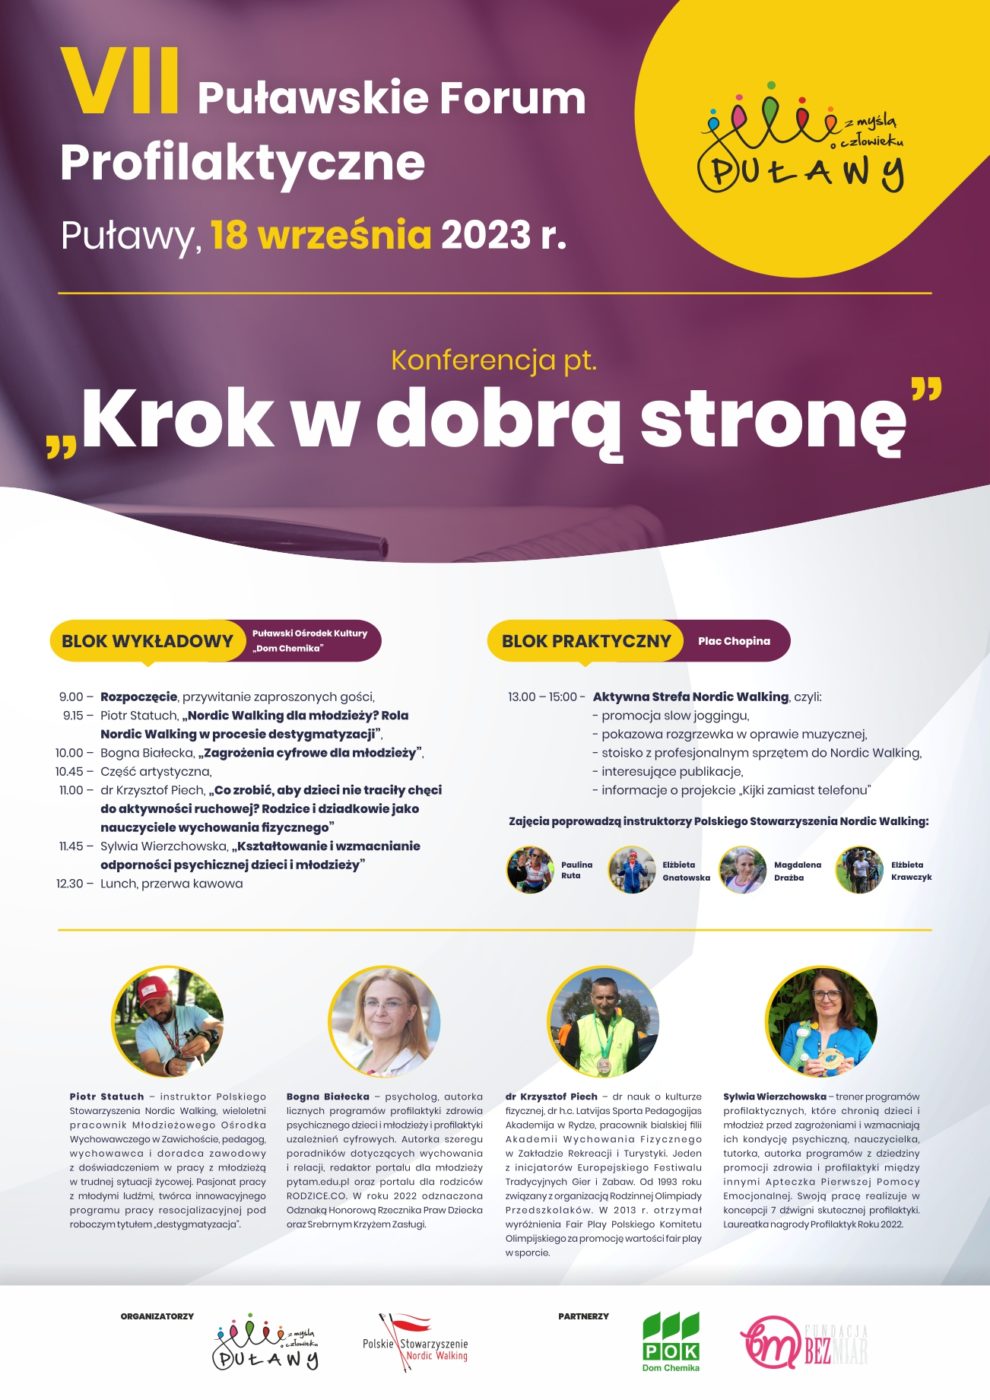 Program VII Puławskiego Forum Profilaktycznego, Puławy, 18 września 2023 r. Konferencja "Krok w dobrą stronę"